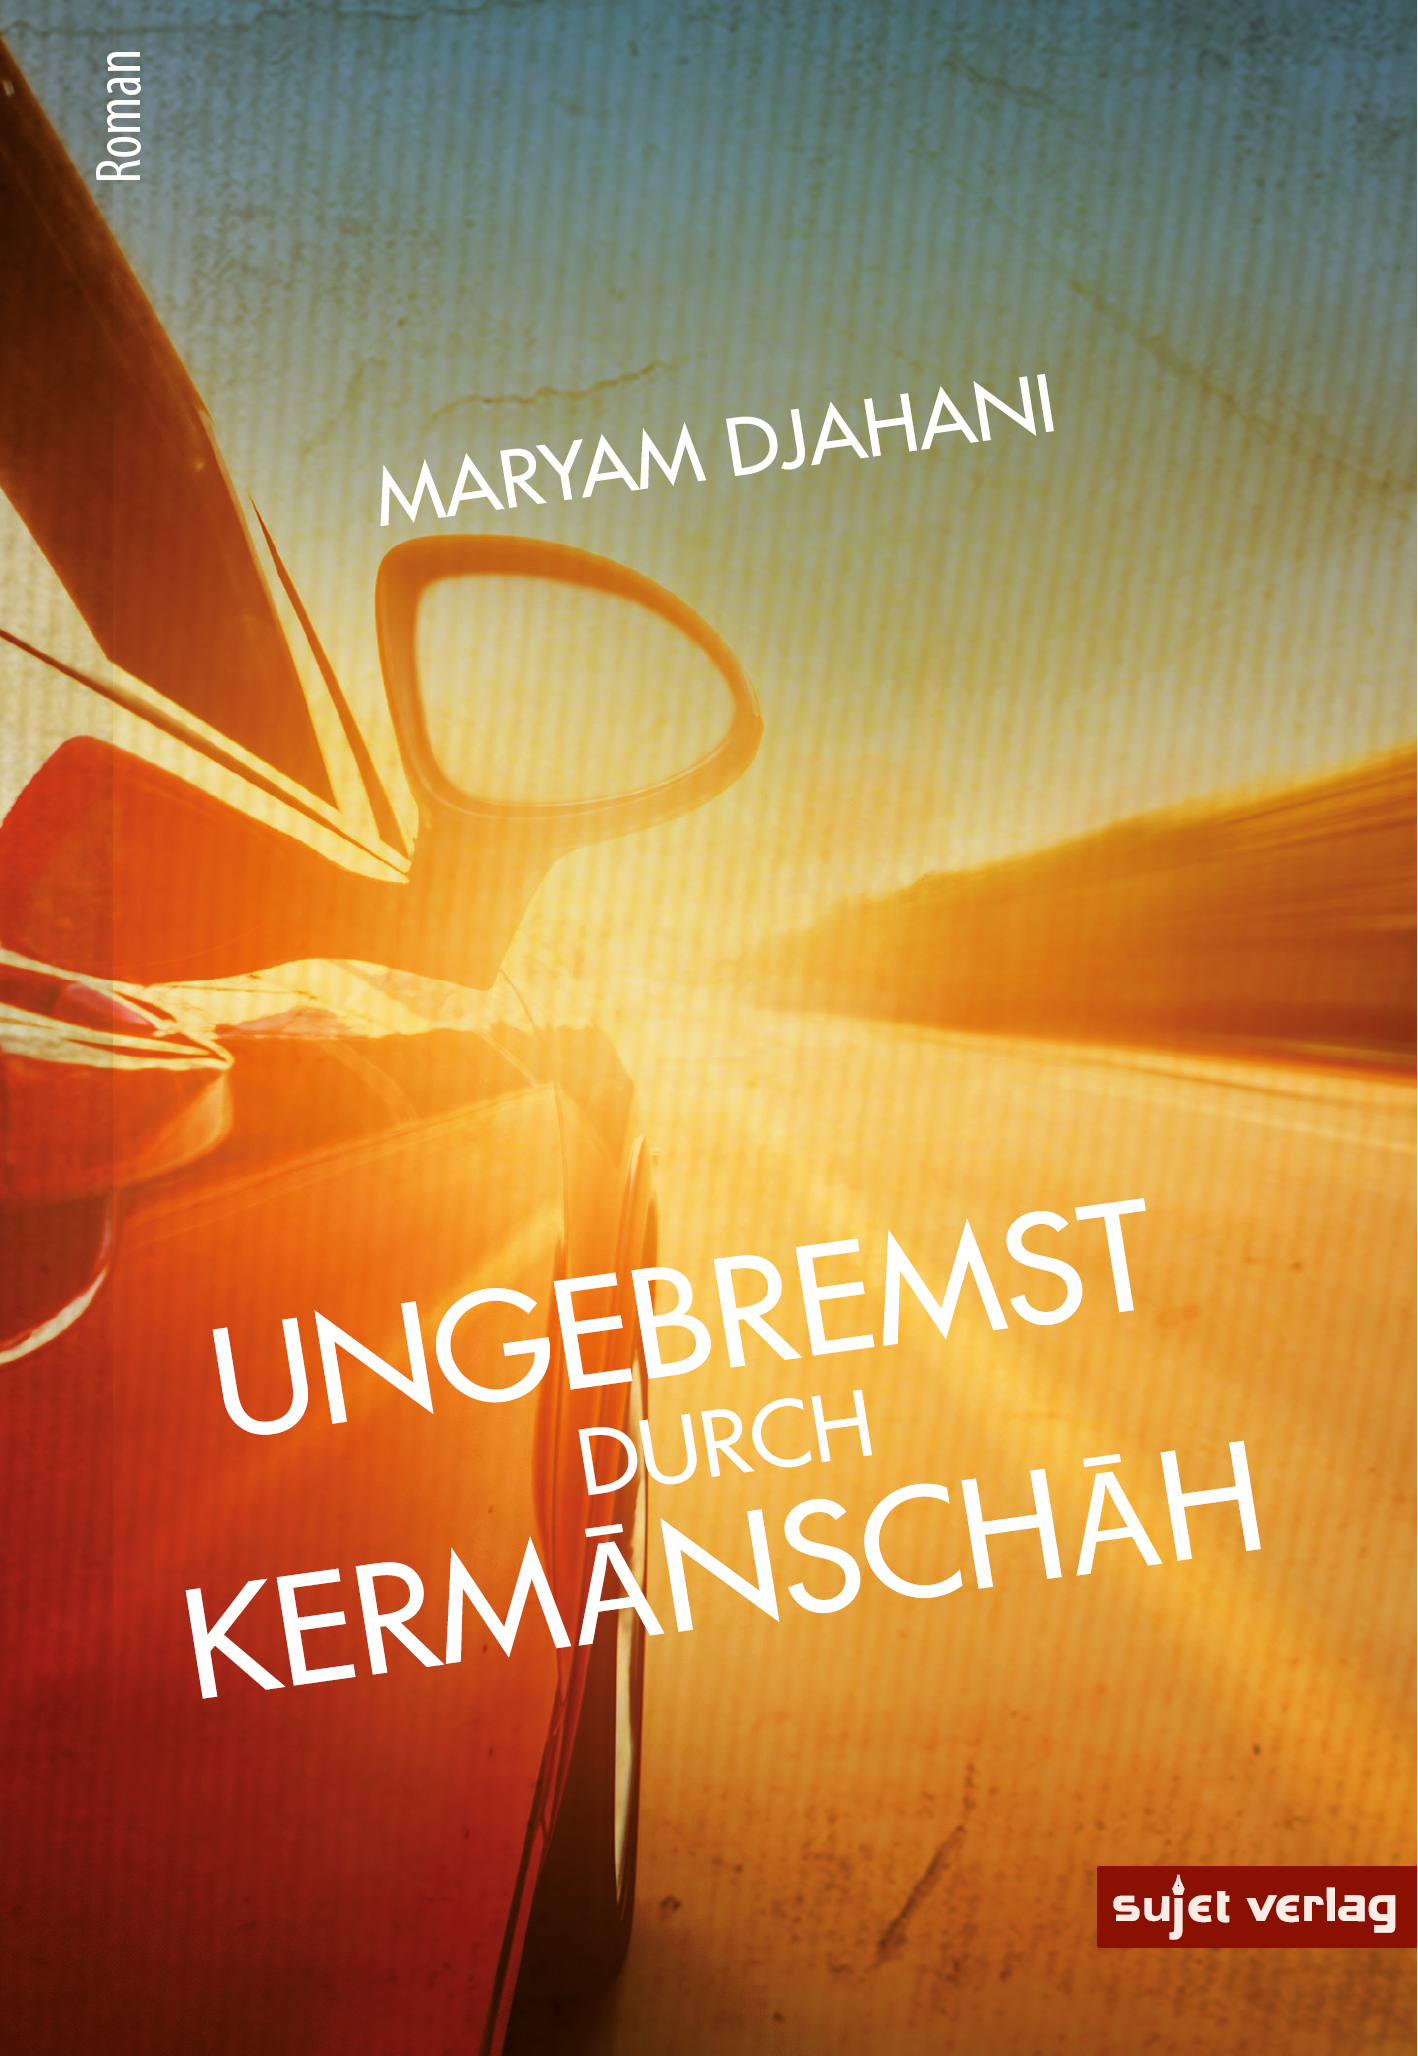 Buchcover von Maryam Djahanis "Ungebremst durch Kermanschah", Sujet Verlag 2021; Quelle: Sujet Verlag 